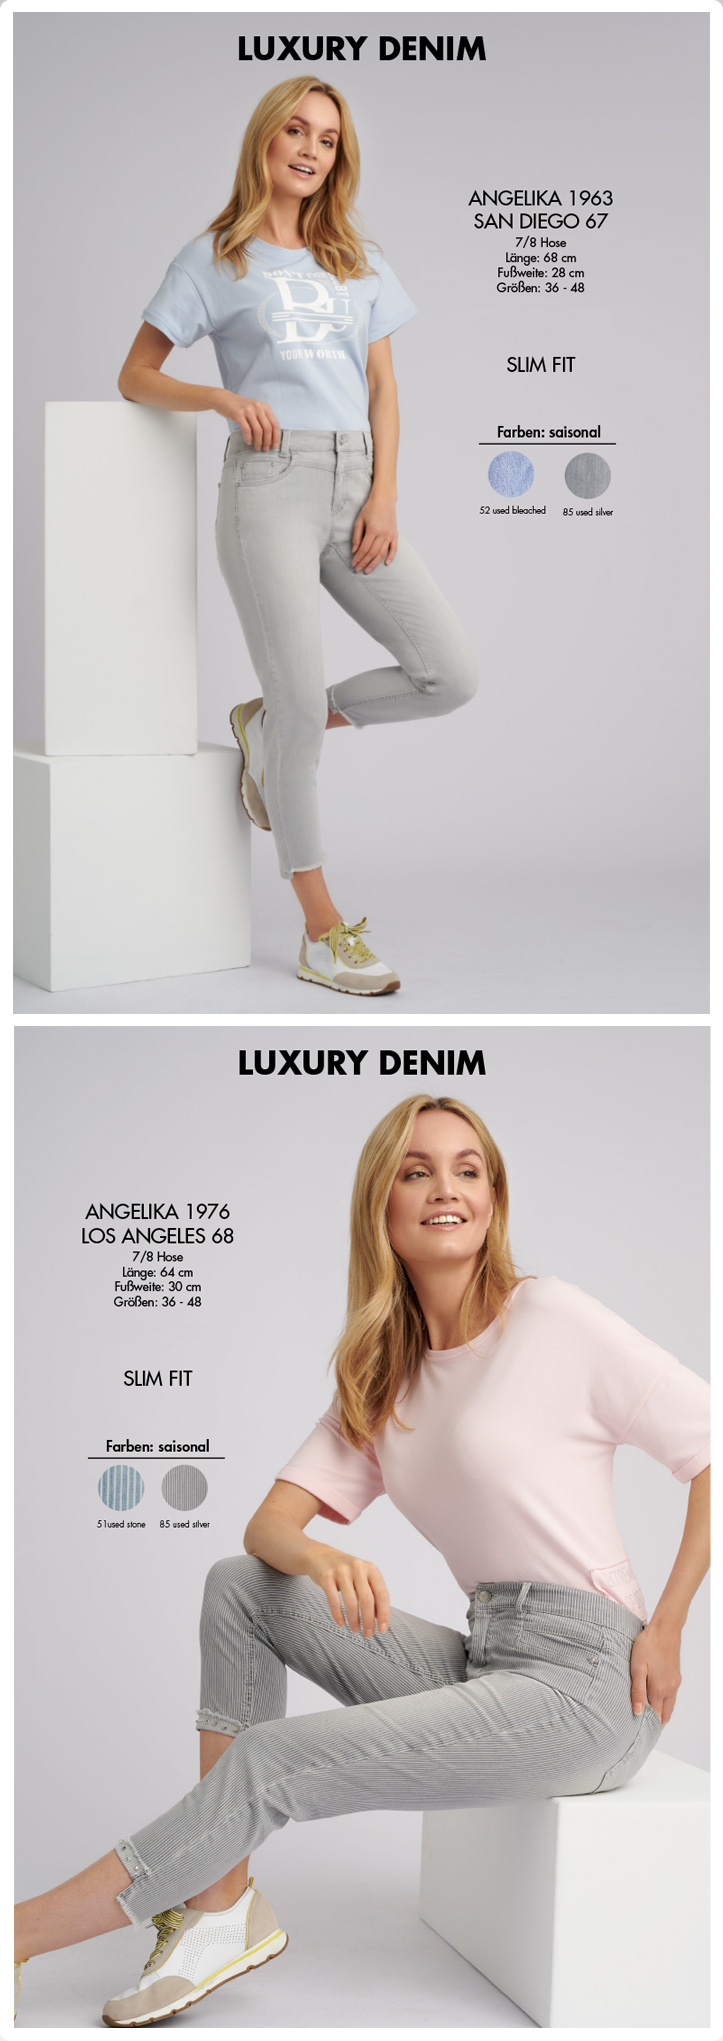 Luxury Denim - Skinny Fit by Anna Montana